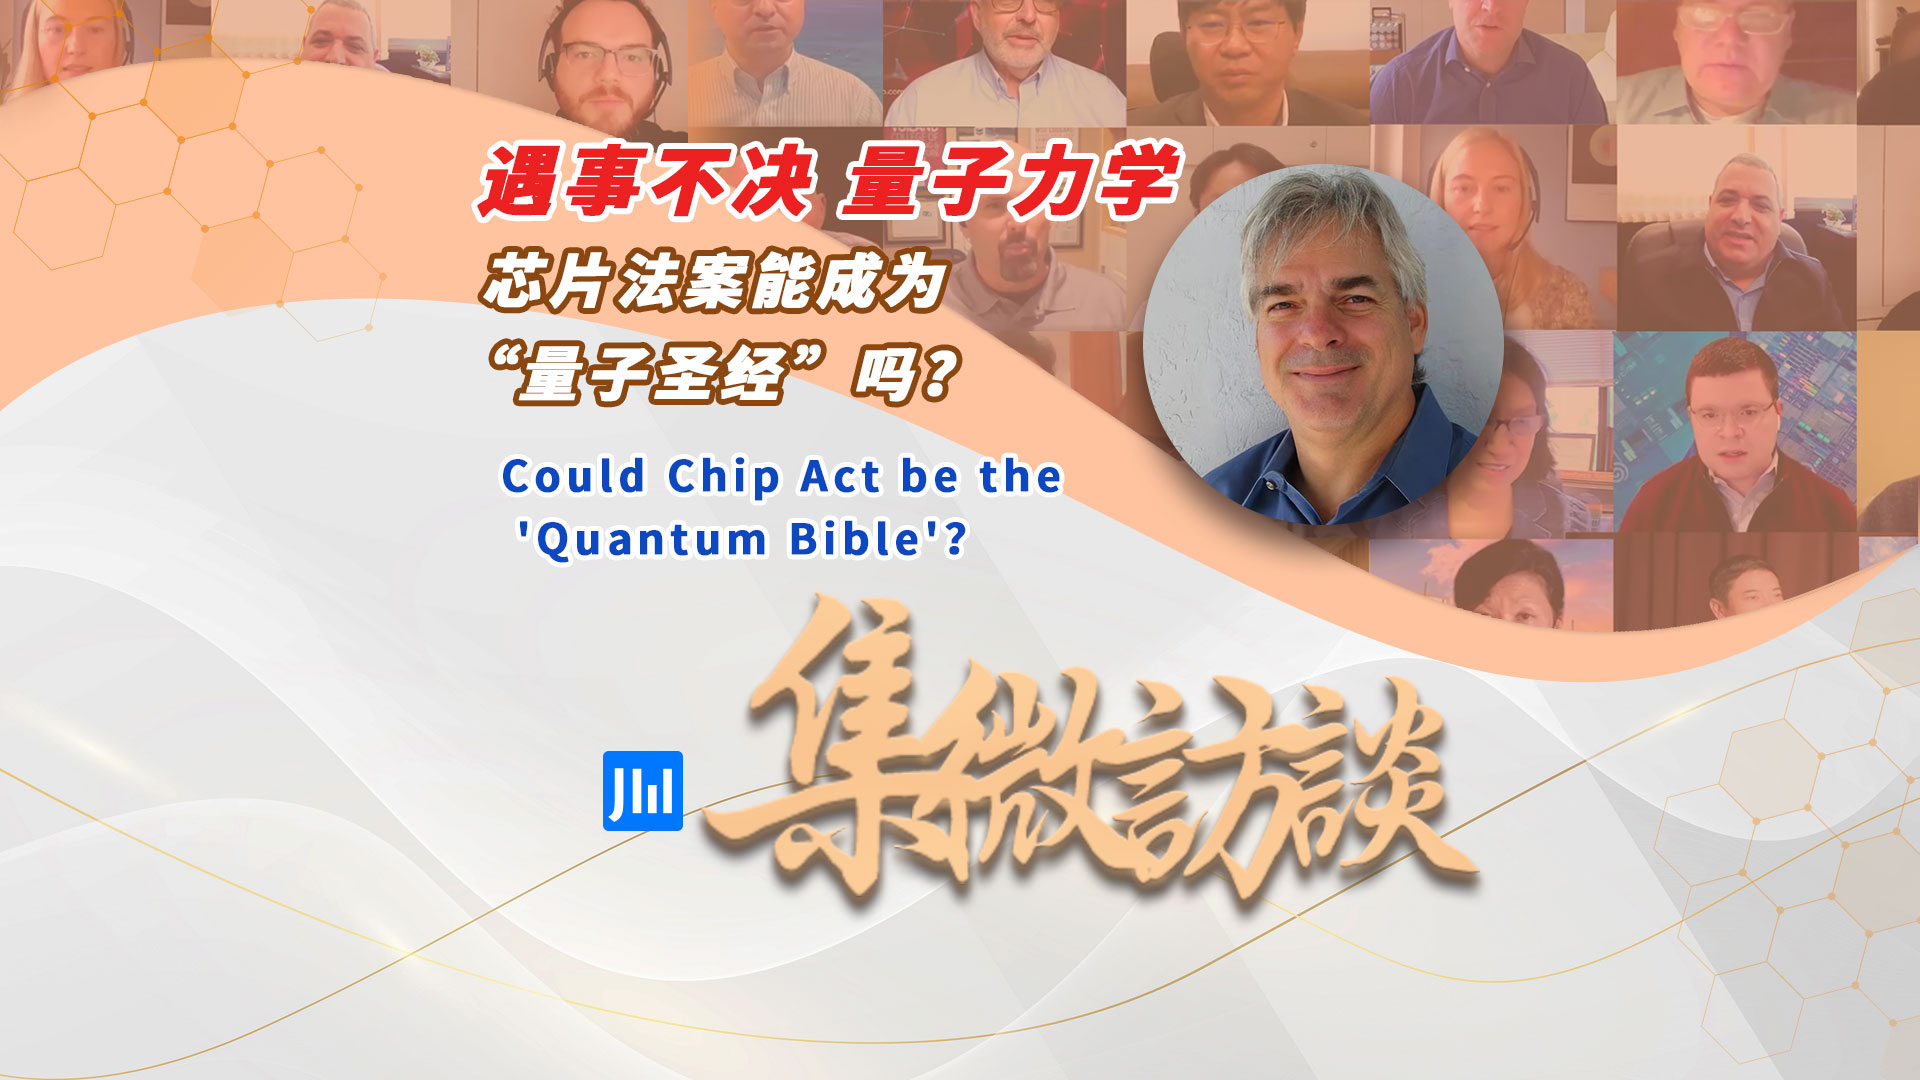 集微访谈第245期：遇事不决量子力学，芯片法案能成为“量子圣经”吗？